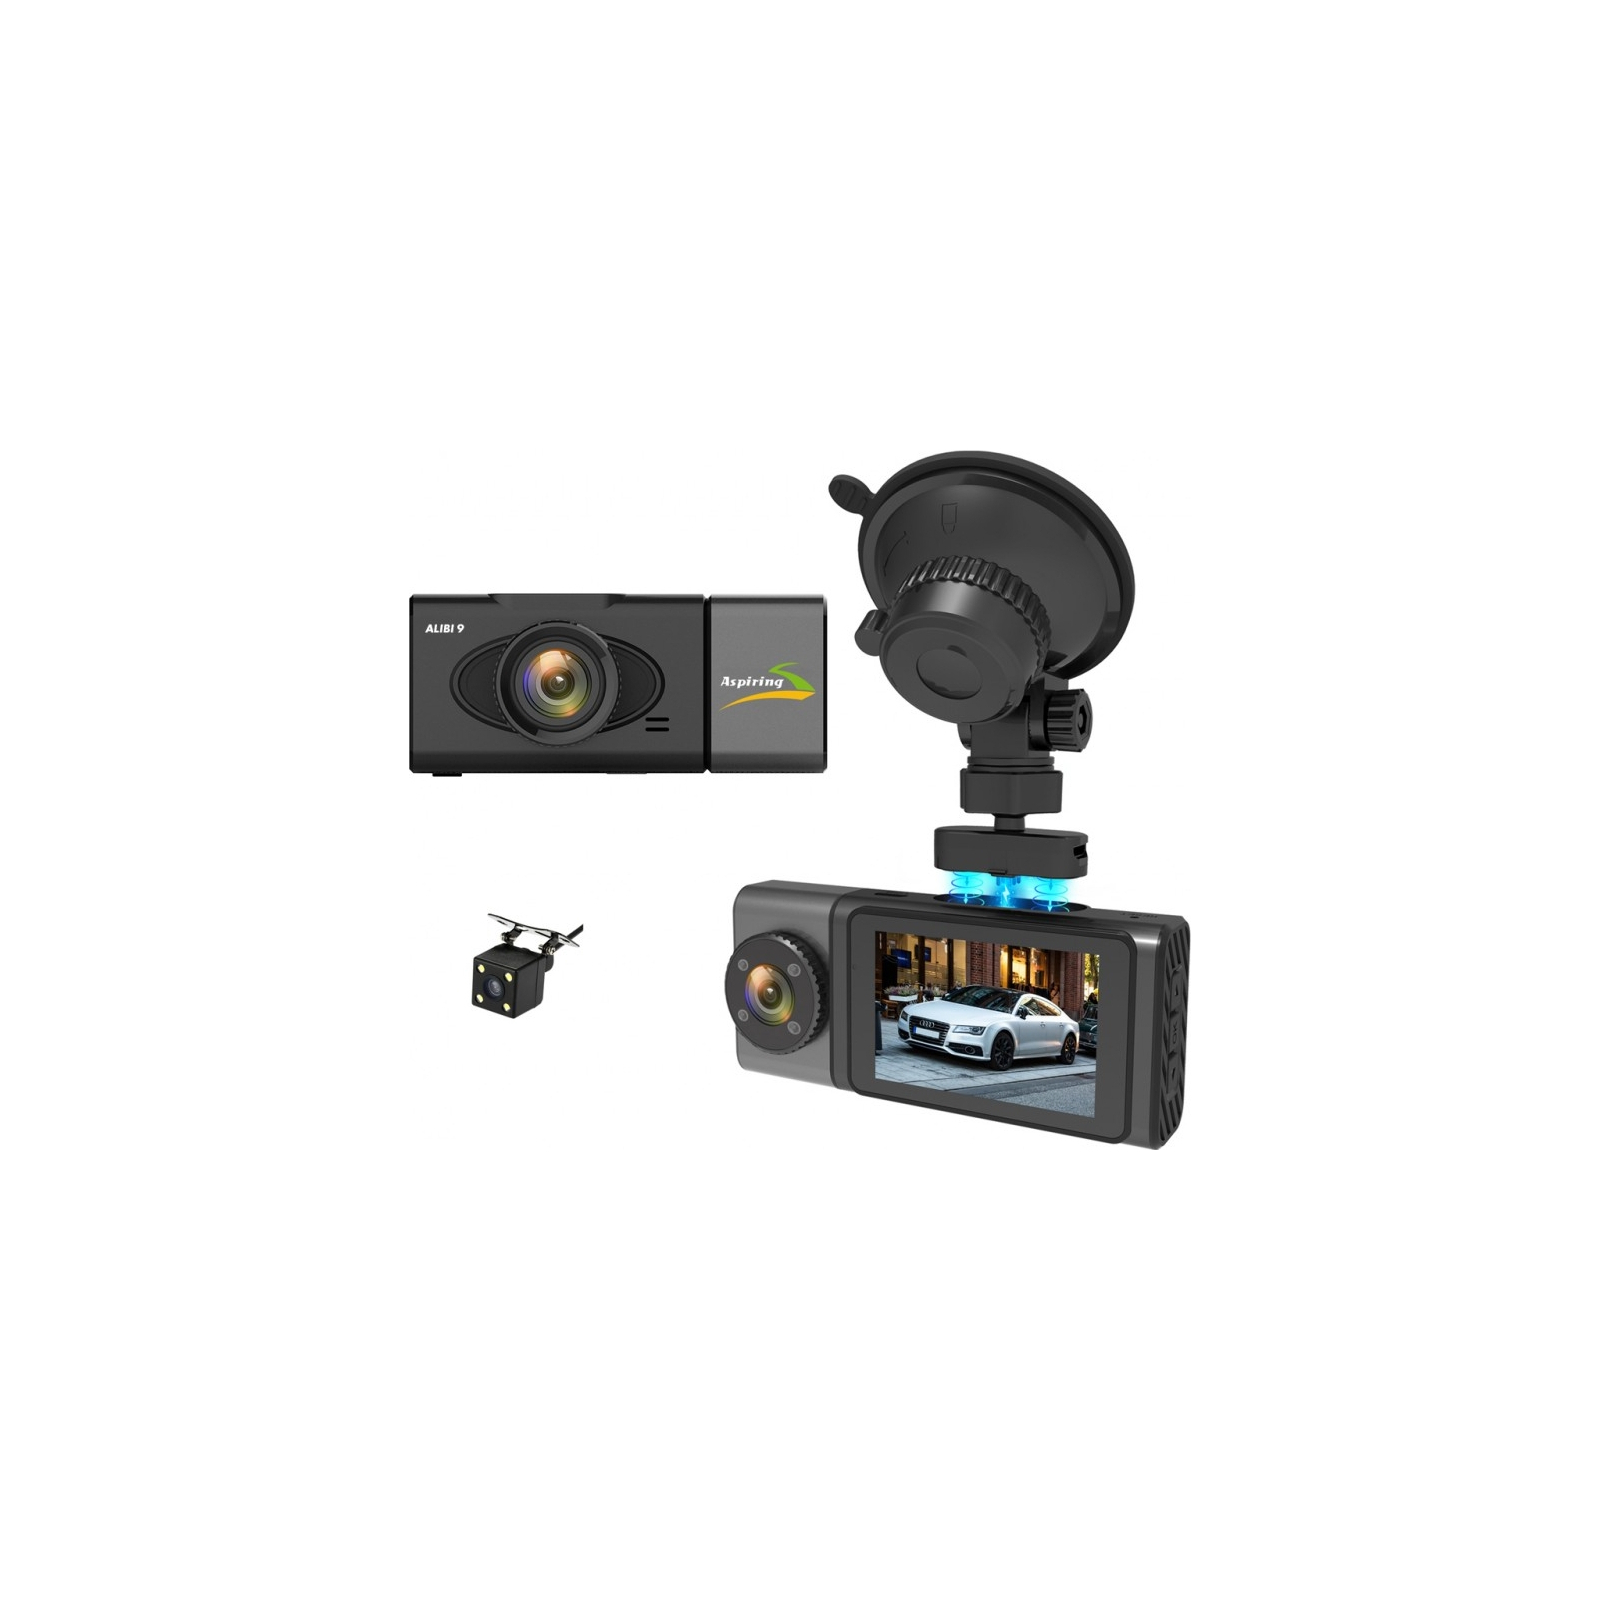 Відеореєстратор Aspiring Alibi 9 GPS, 3 Cameras, Speedcam (Aspiring Alibi 9 GPS, 3 Cameras, Speedcam) зображення 2